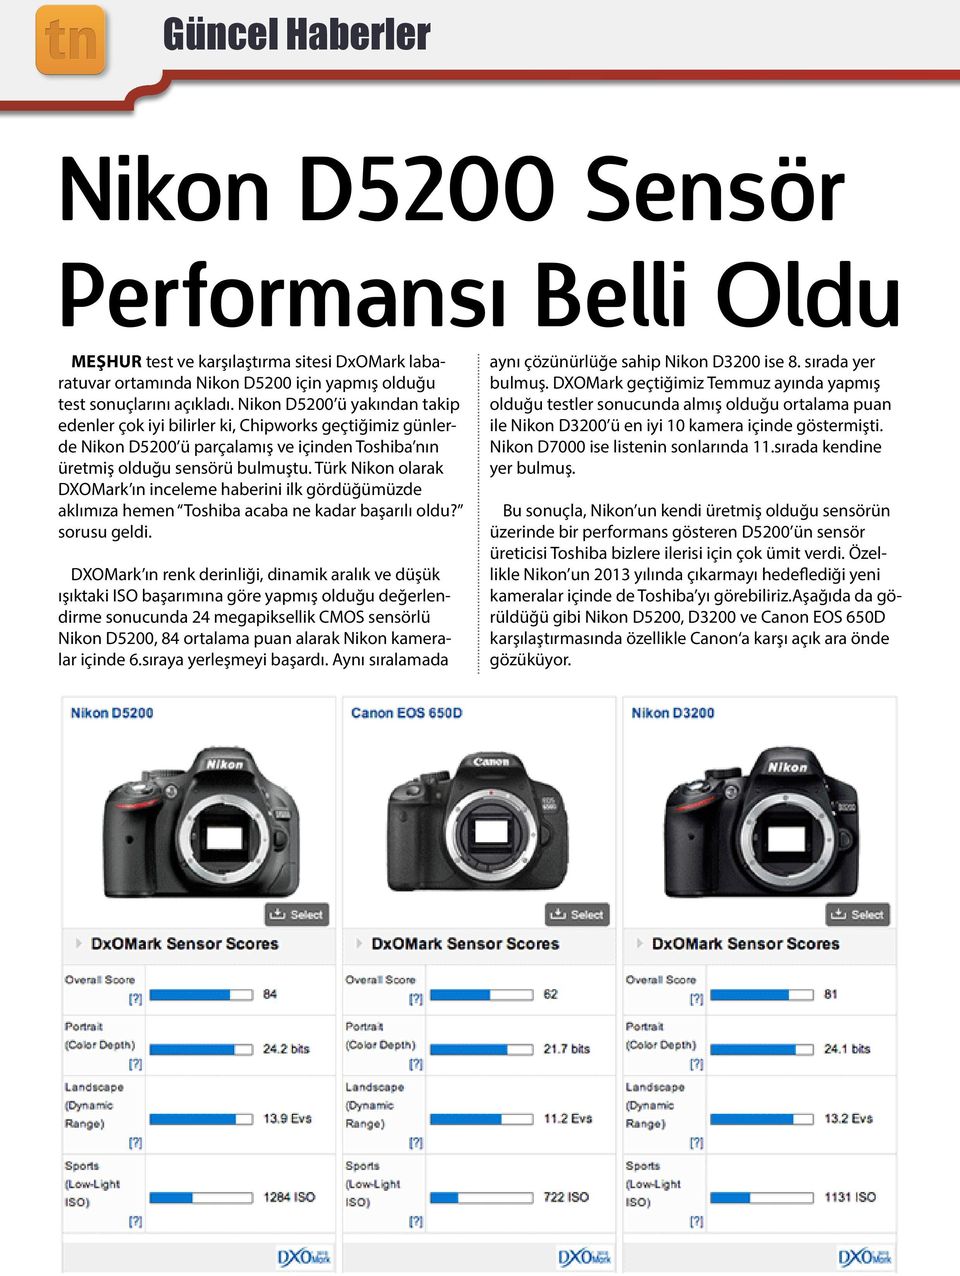 Türk Nikon olarak DXOMark ın inceleme haberini ilk gördüğümüzde aklımıza hemen Toshiba acaba ne kadar başarılı oldu? sorusu geldi.